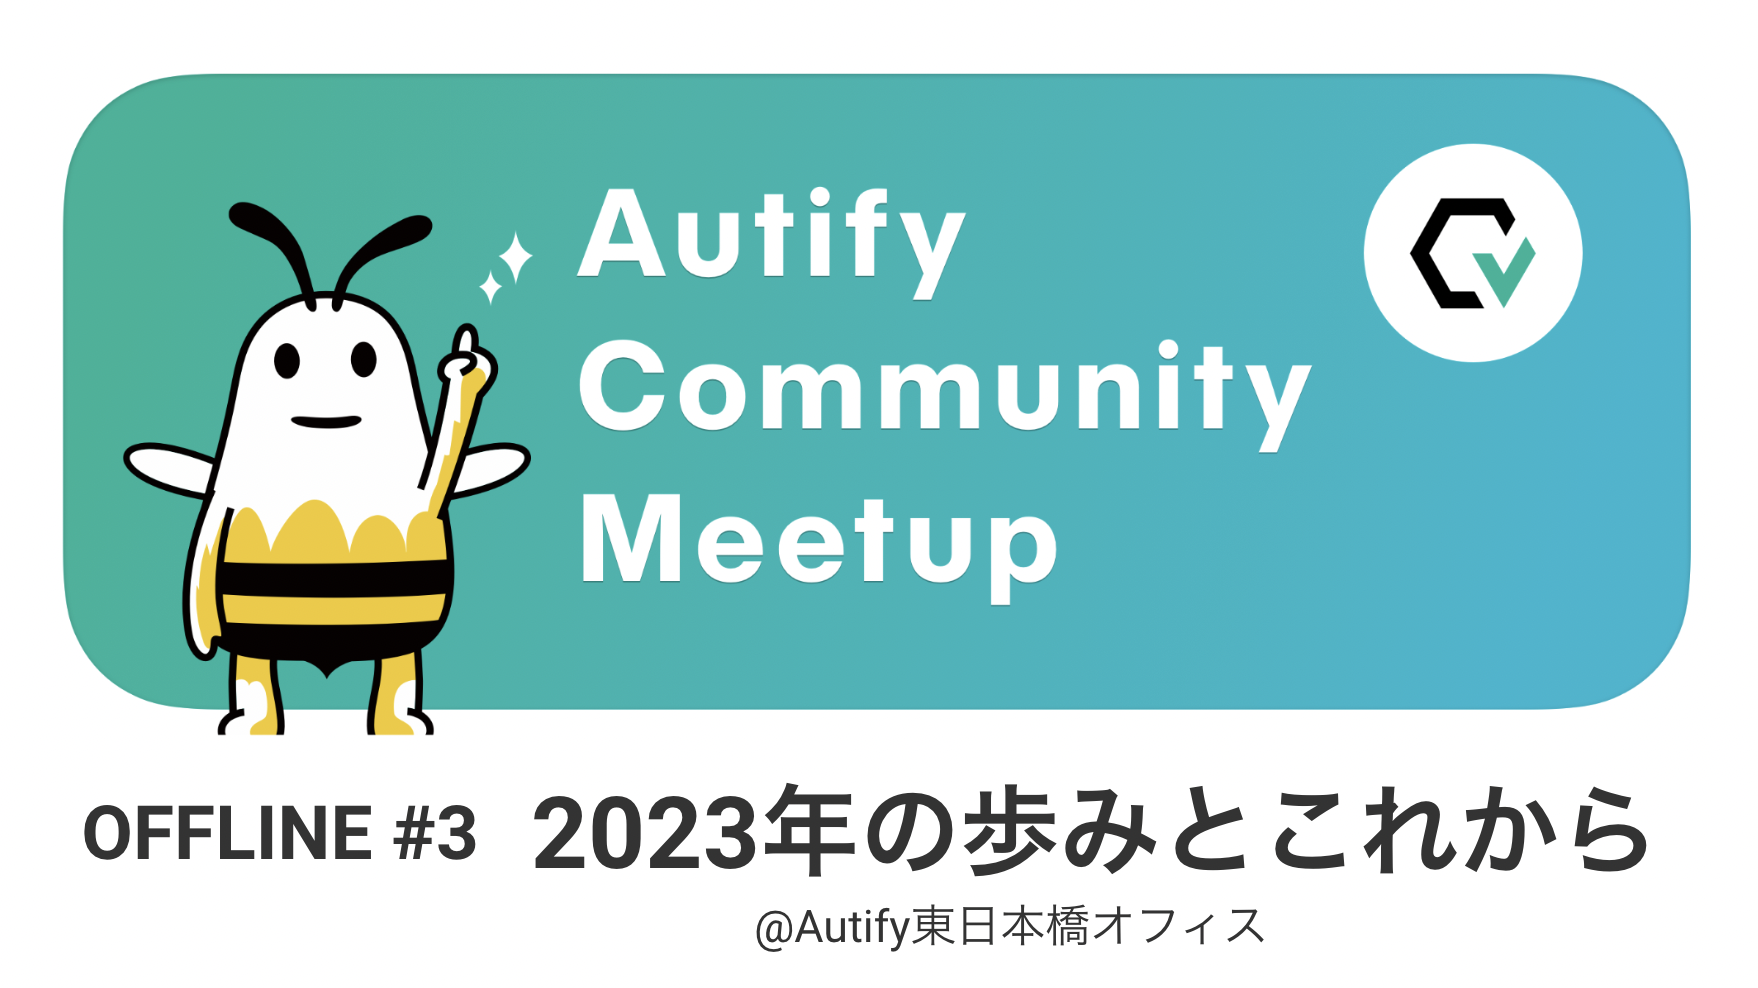 【イベントレポート】Autify Community Meetup 2023 #3